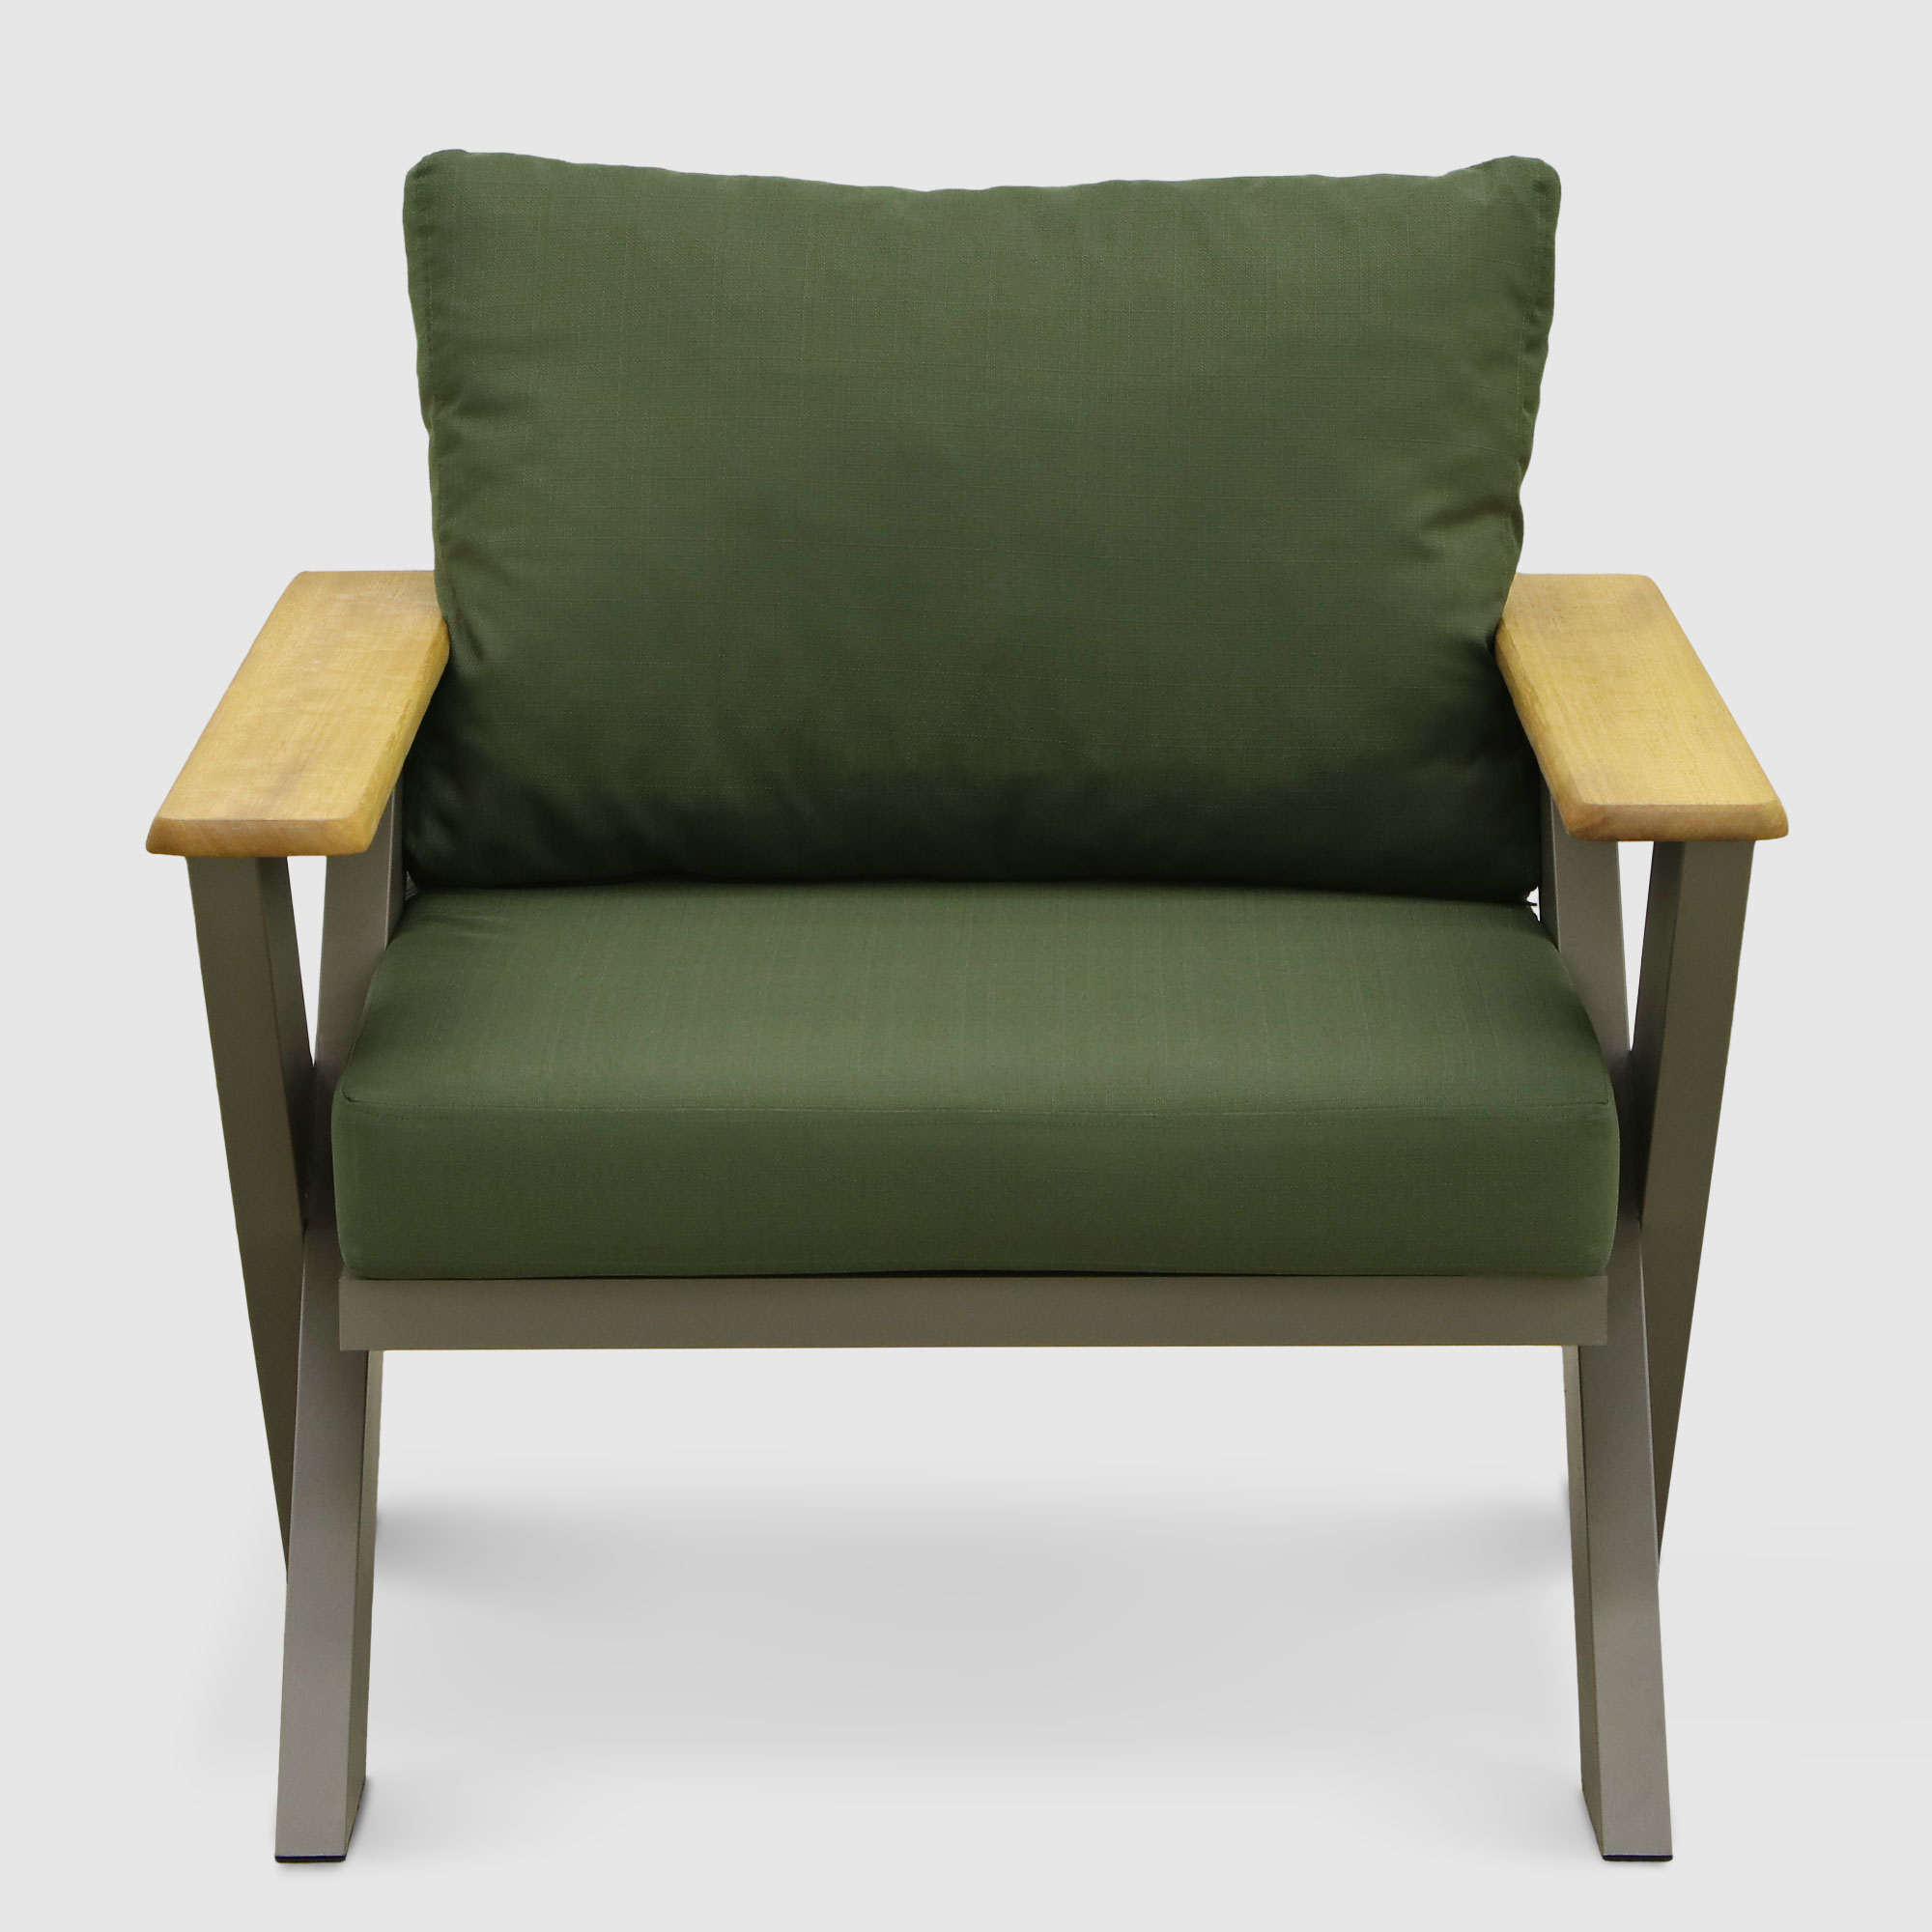 Комплект мебели Emek garden Toledo зеленый 4 предмета, цвет оливковый, размер 170х80х90 - фото 10